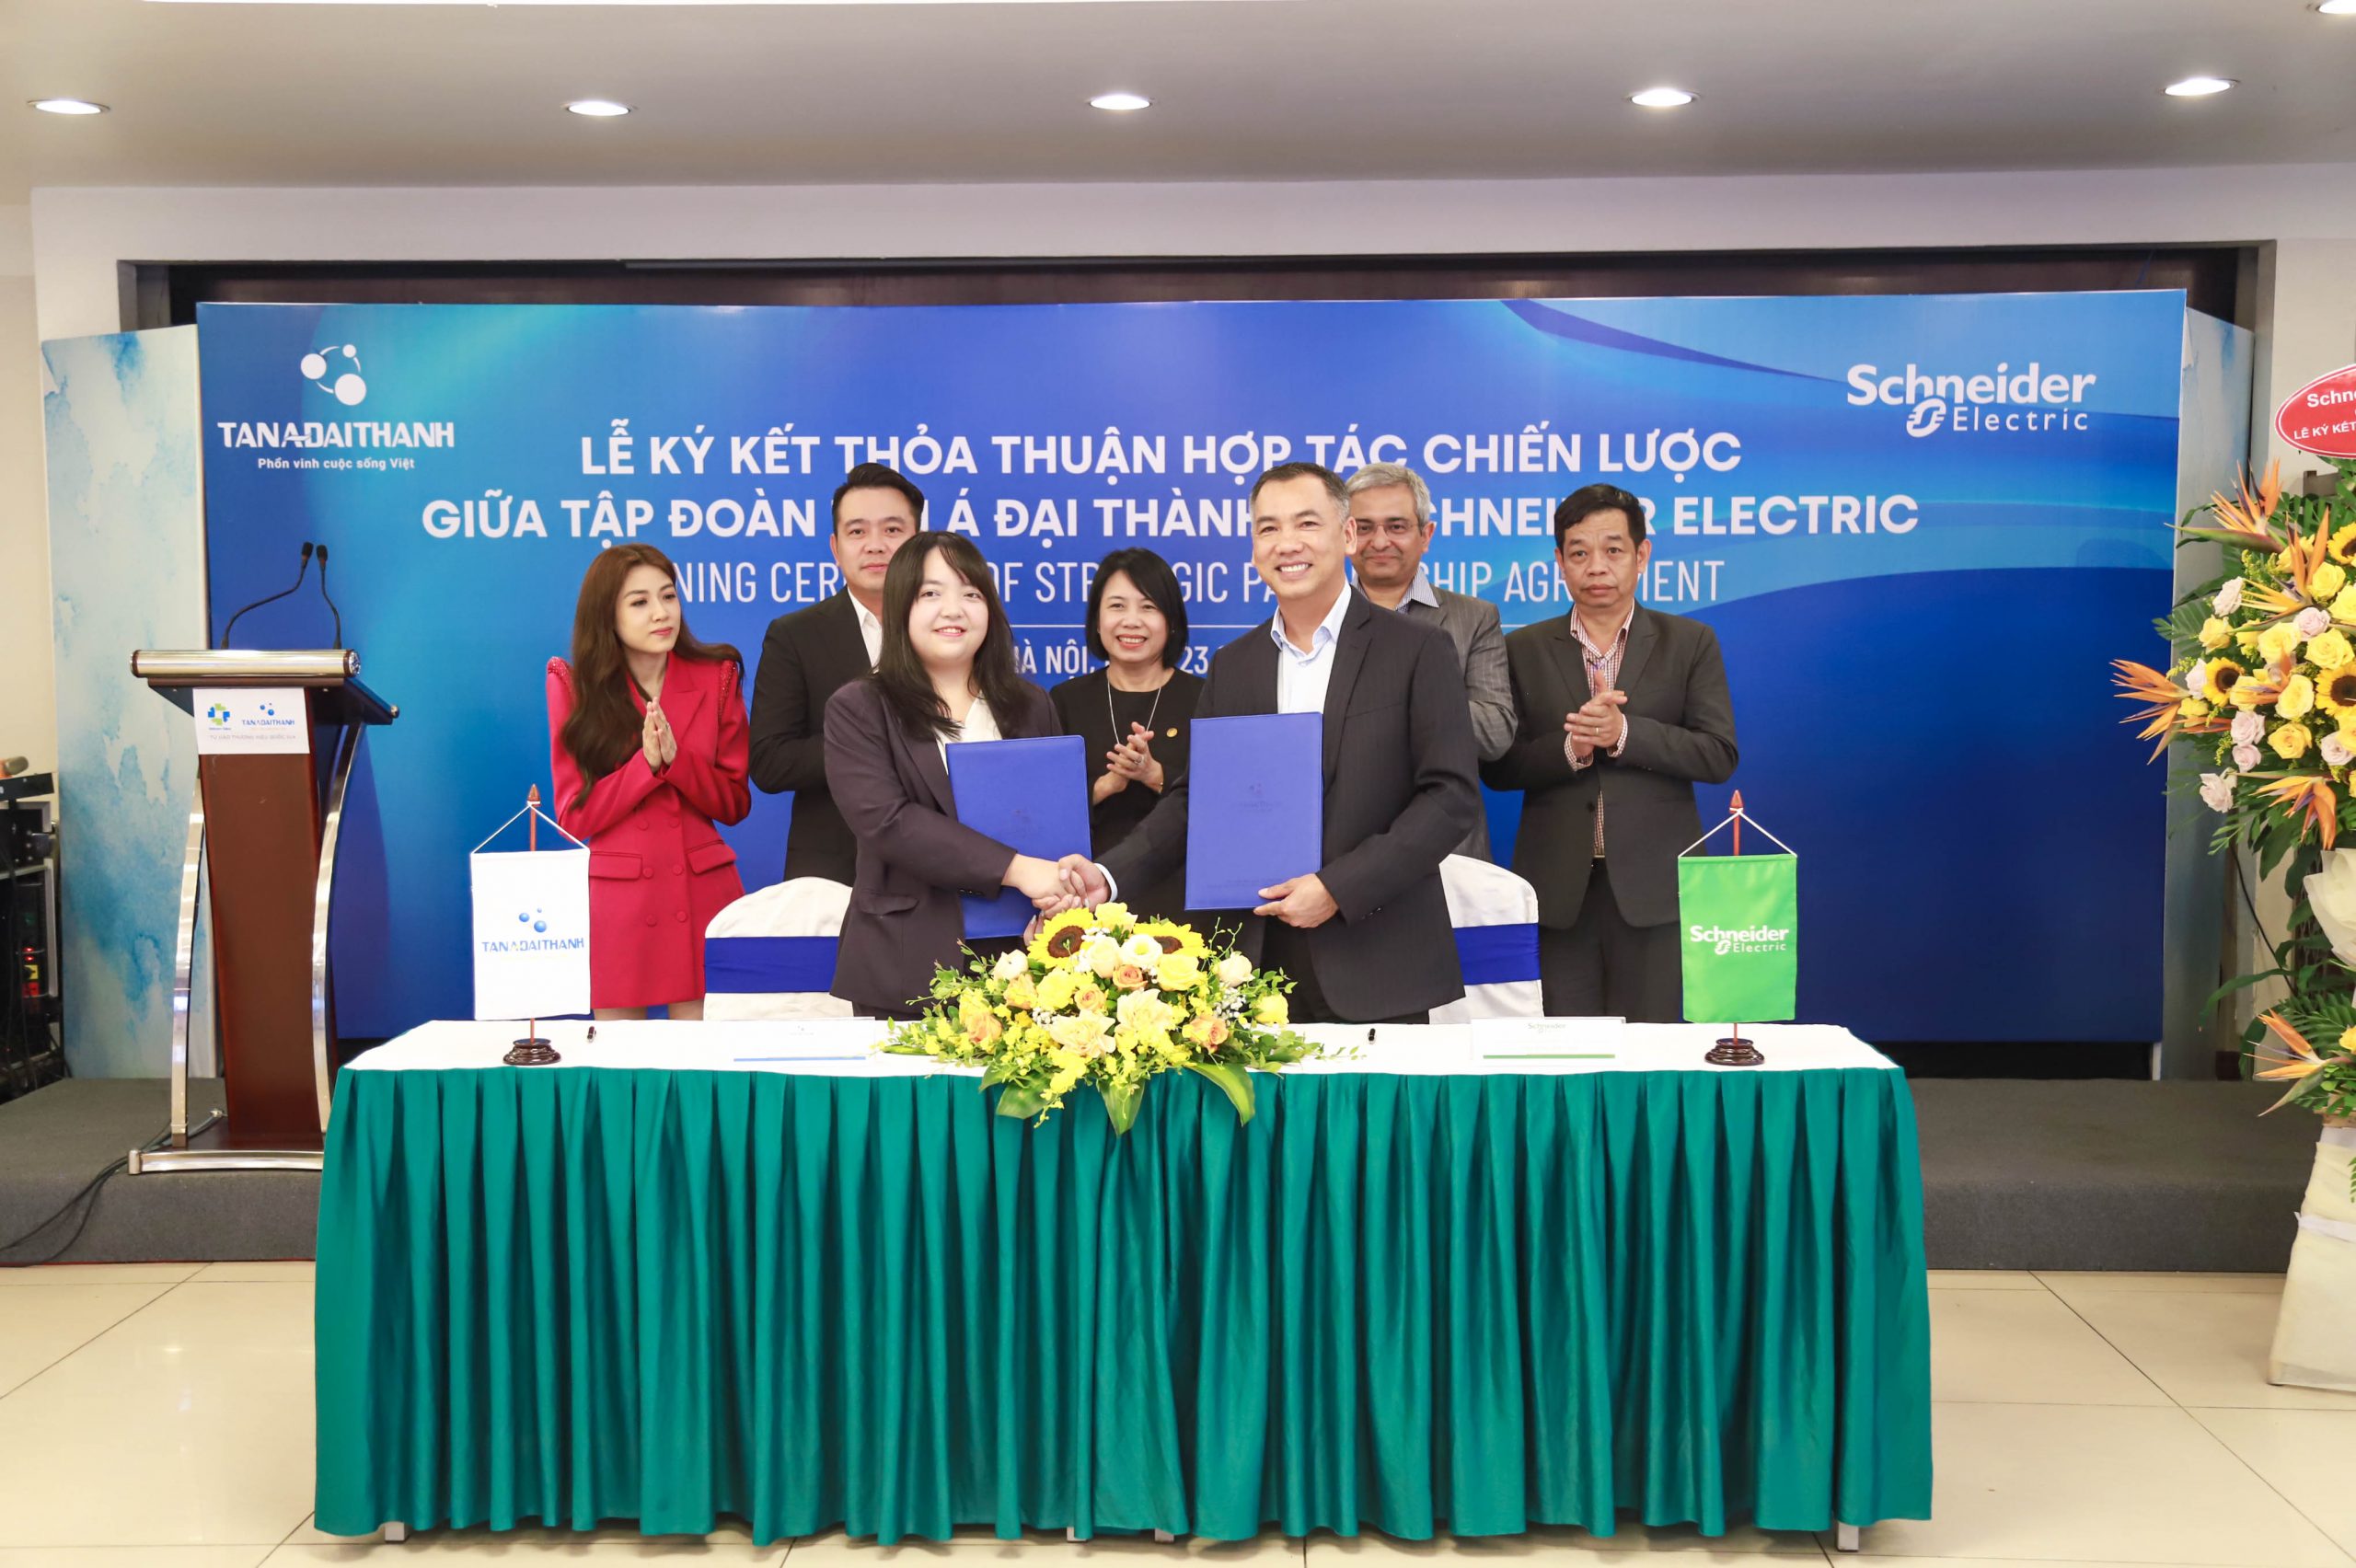 Tân Á Đại Thành hợp tác Schneider Electric xây dựng giải pháp cho Khu đô thị thông minh